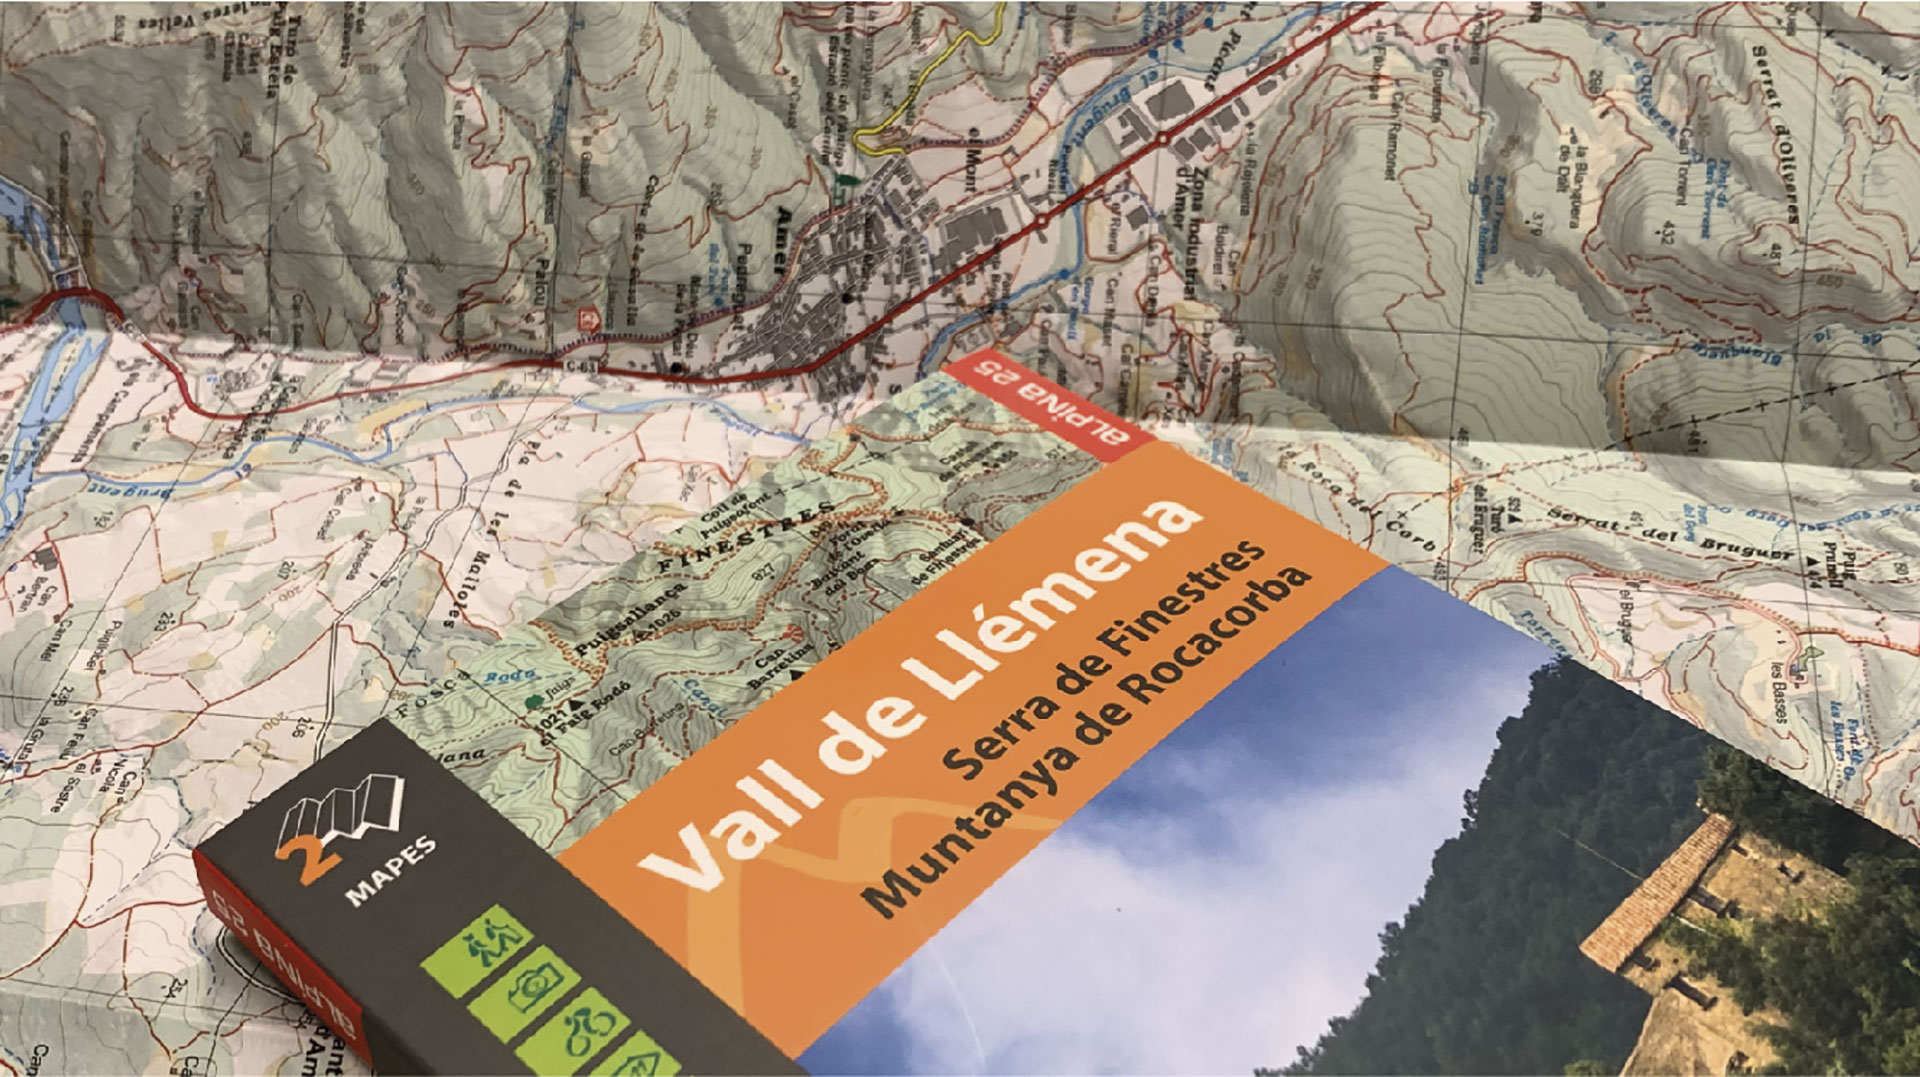 Presentació del mapa “Vall de Llémena”, de l’Editorial Alpina